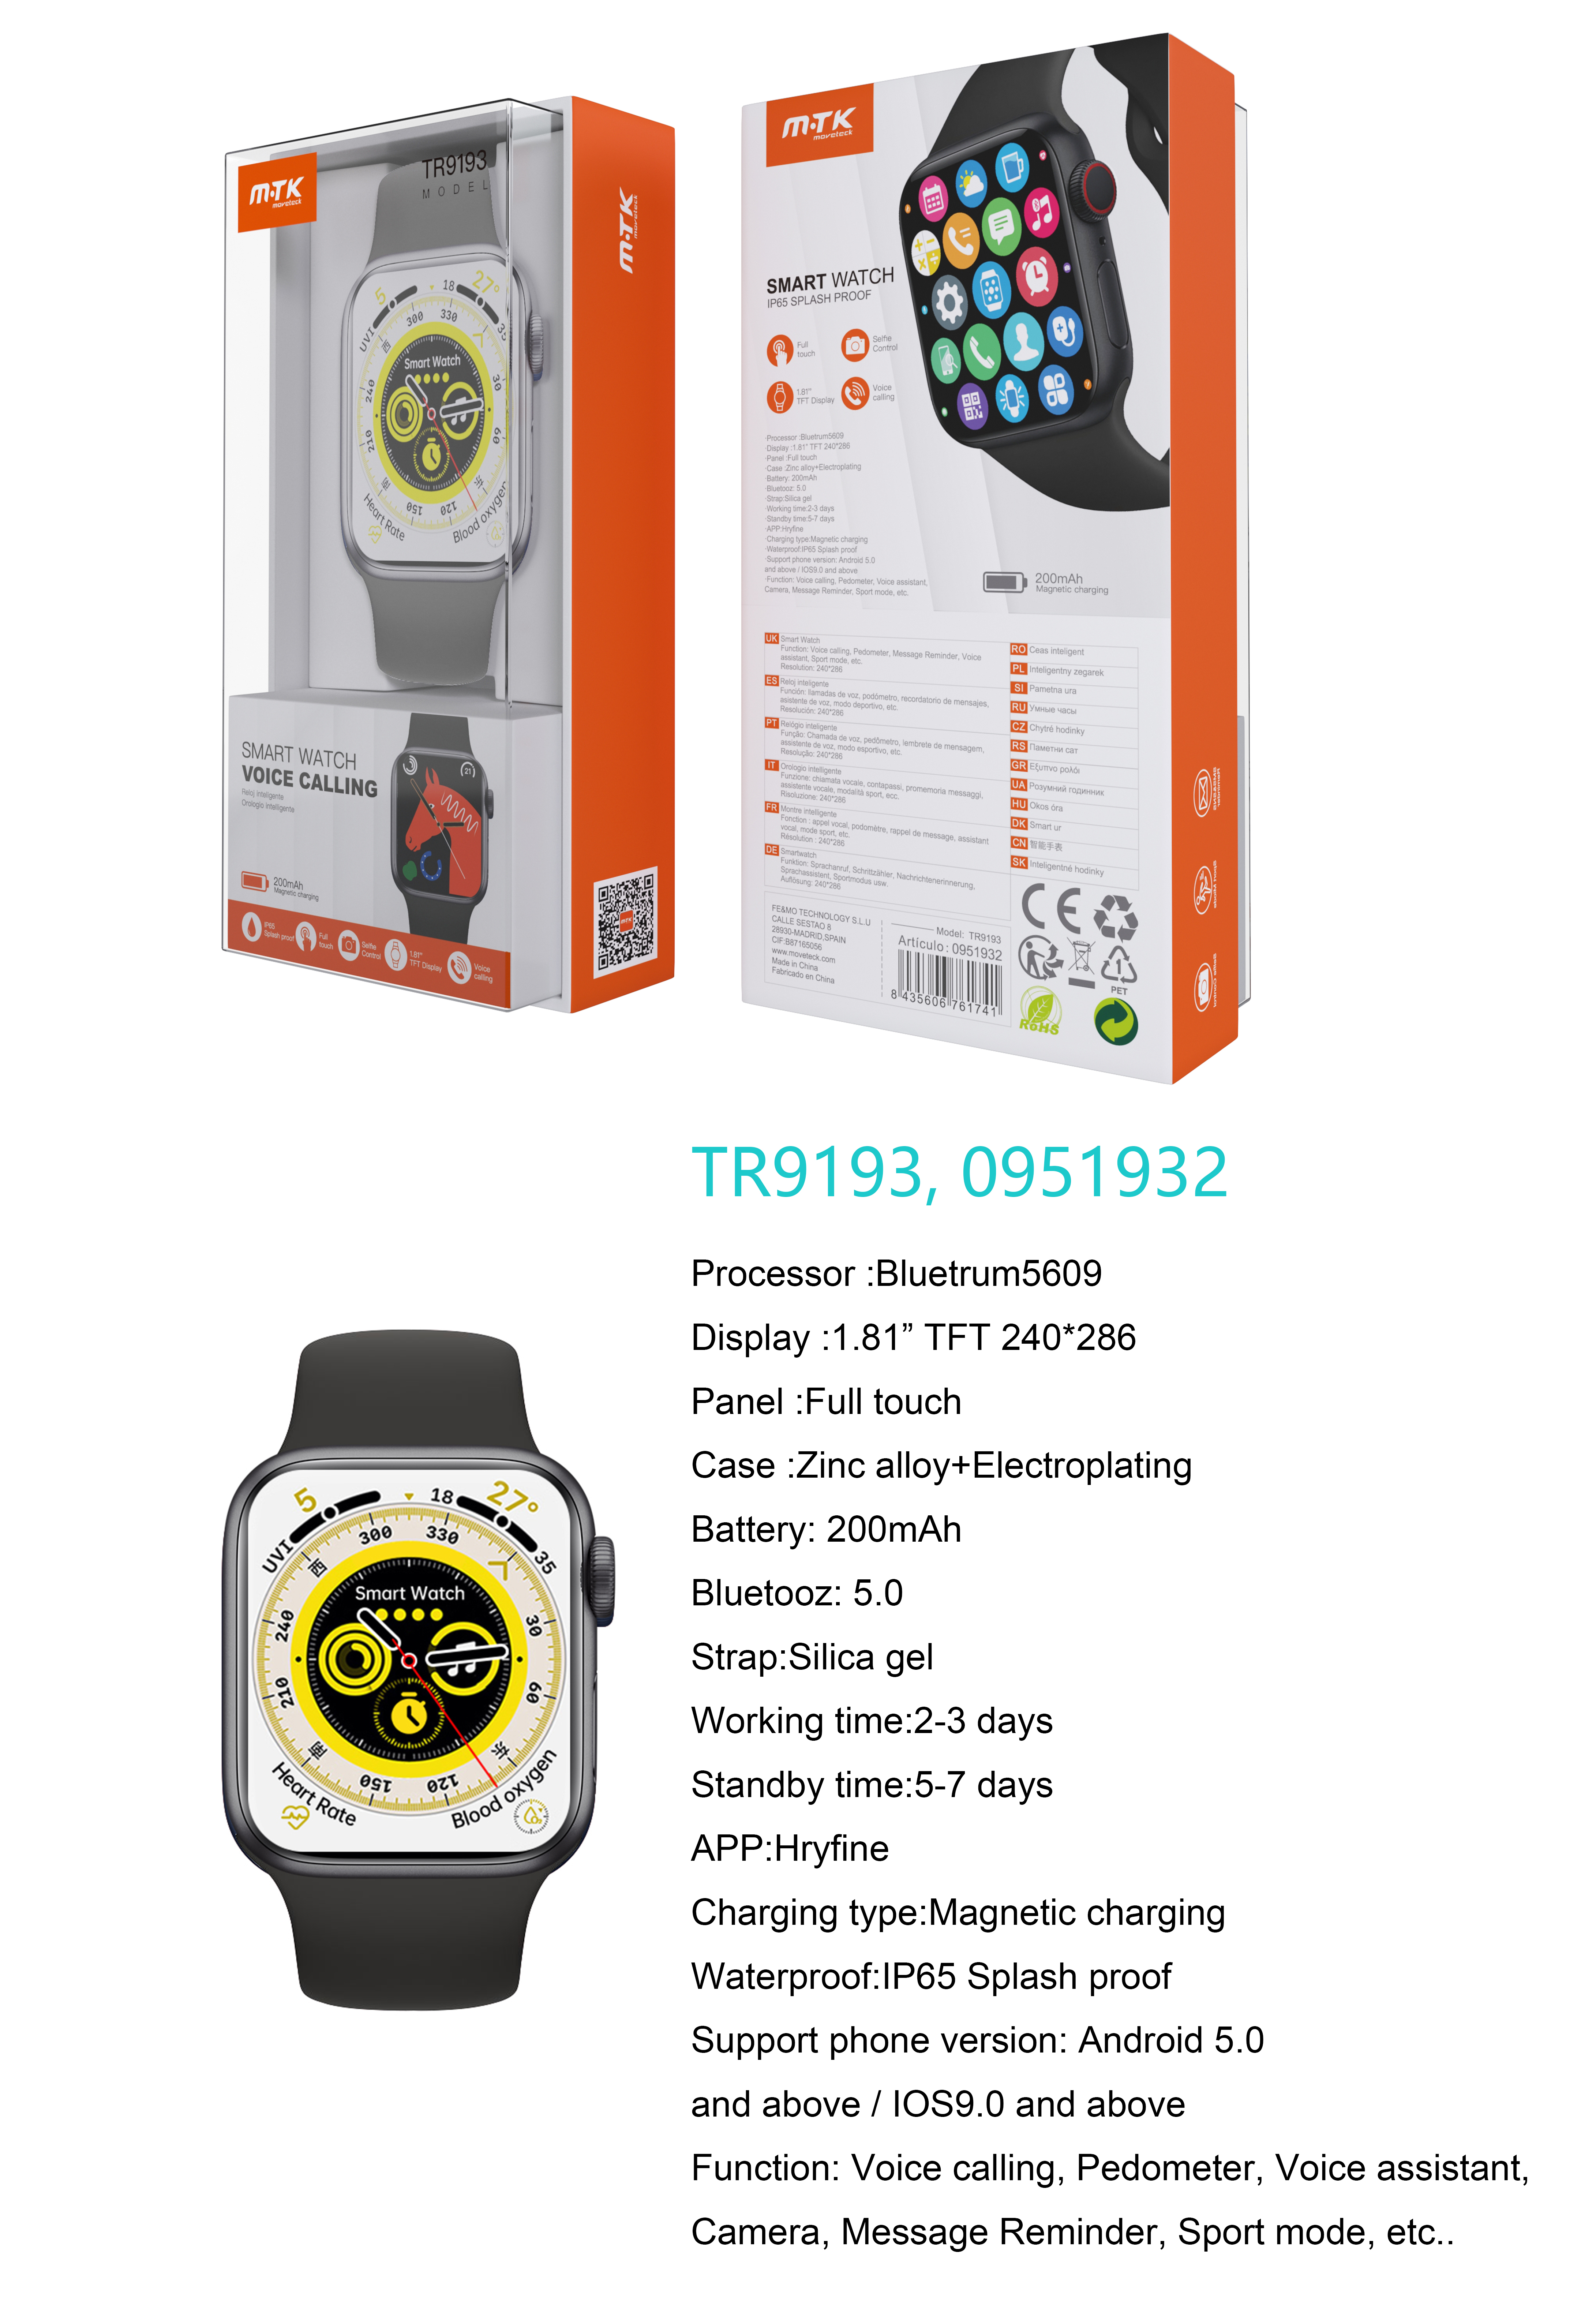 TR9193 NE Reloj Inteligente con bluetooth 5.0, Pantalla tactil de 1.81 pulgadas, Soporta llemadas, Asistente de Voz,Impermeable IP65, Bateria 200mAh,